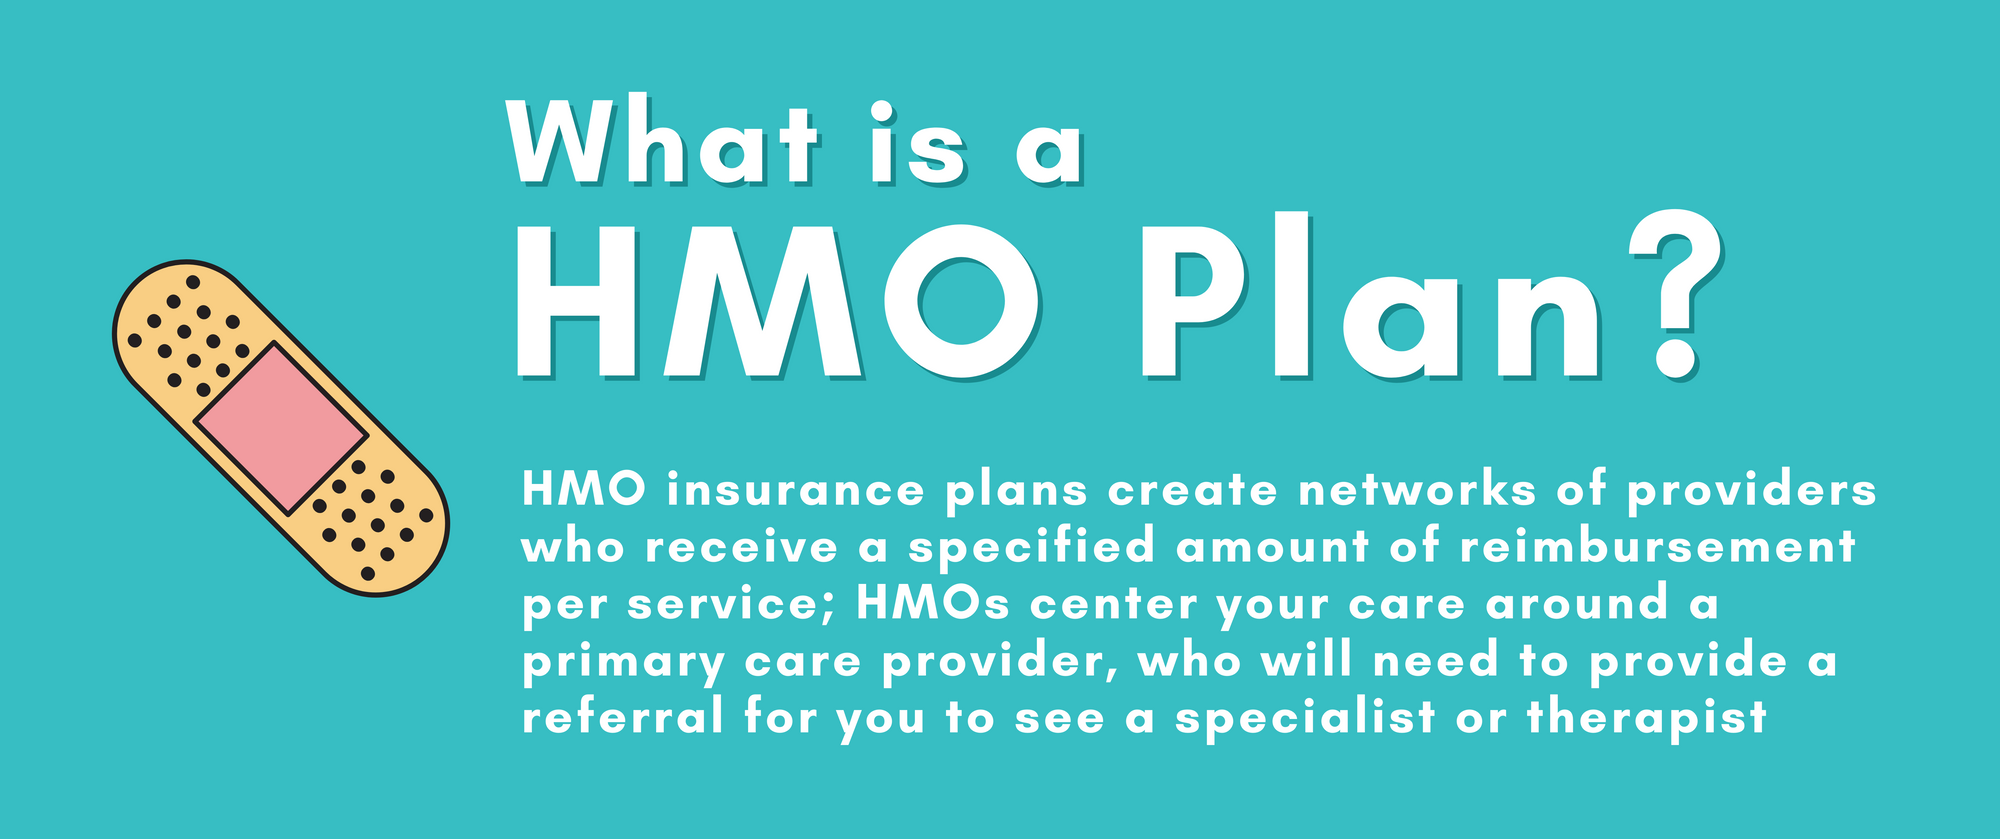 Hmo Insurance Plan 